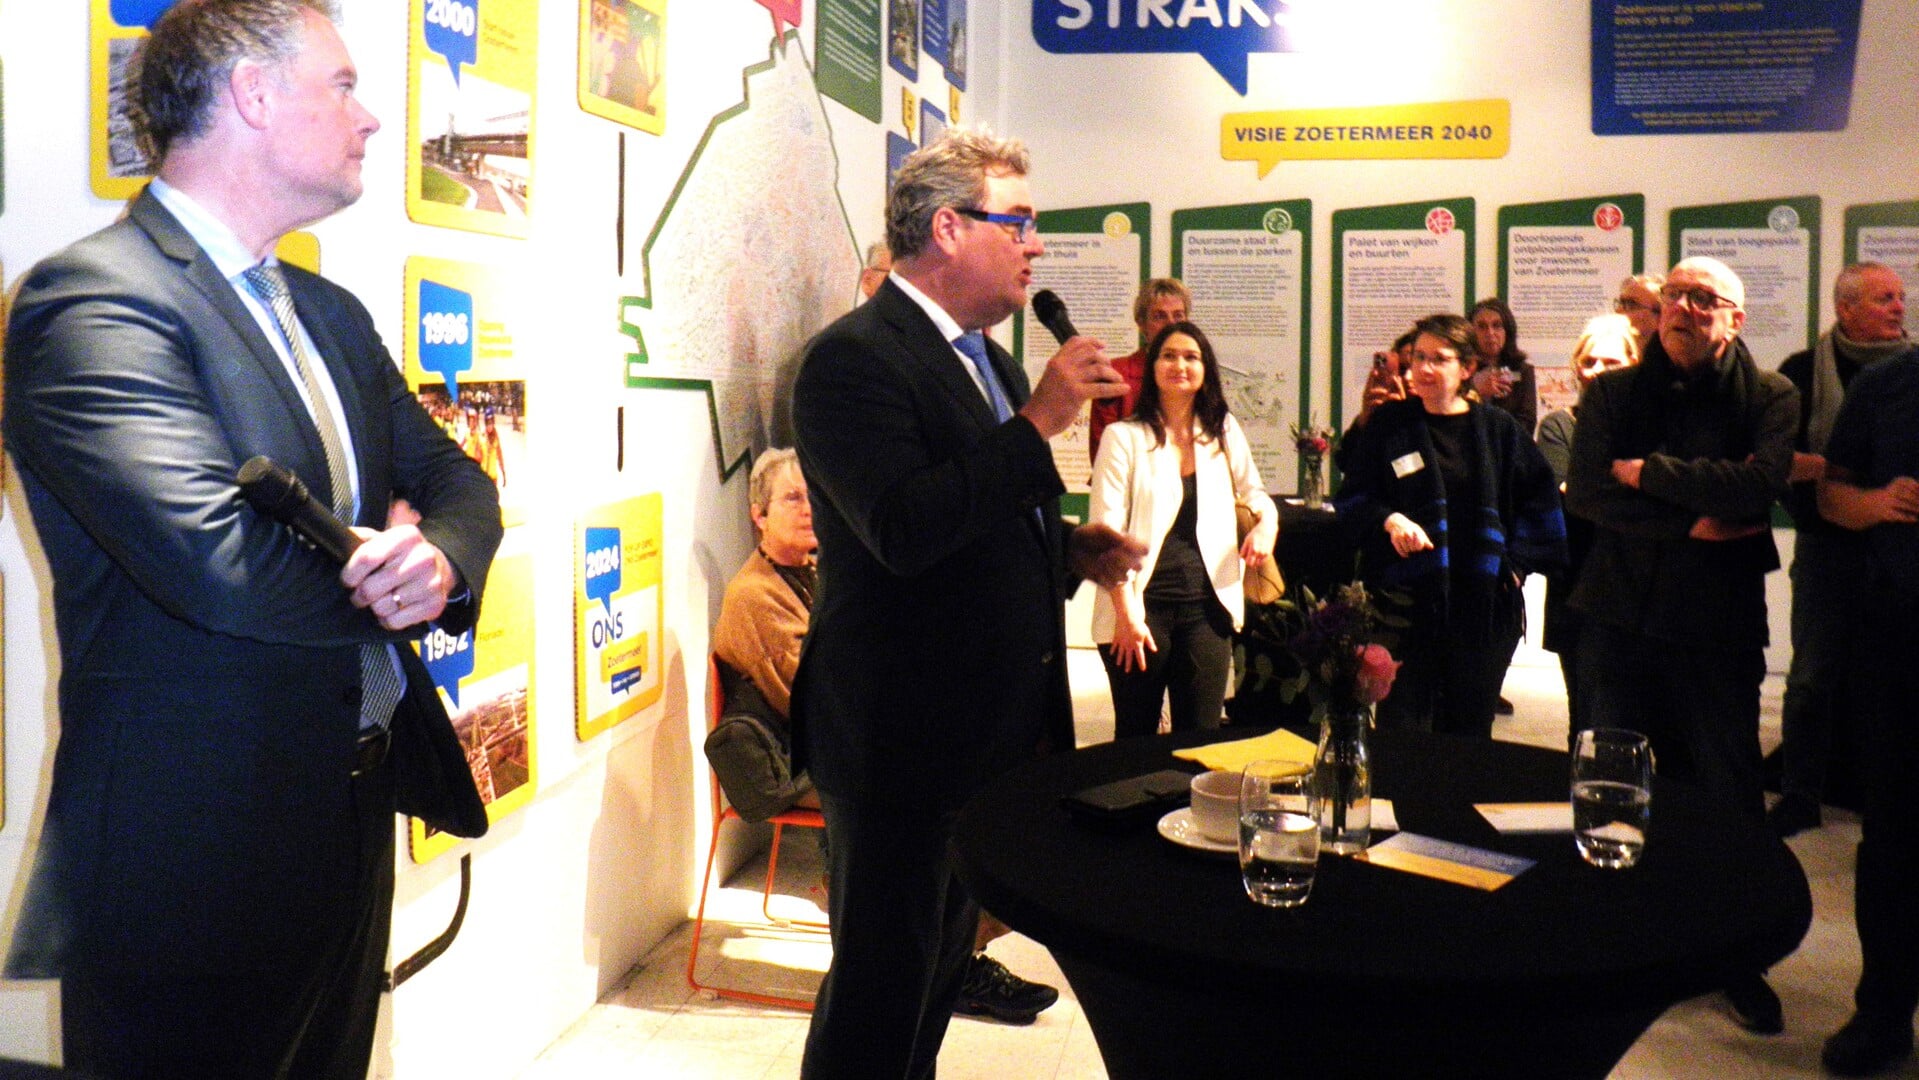 Wethouder Jan Iedema en wethouder Ronald Weerwag (links) bij de opening van pop-up expo ONS Zoetermeer-Toen, nu en straks. Foto Kees van Rongen